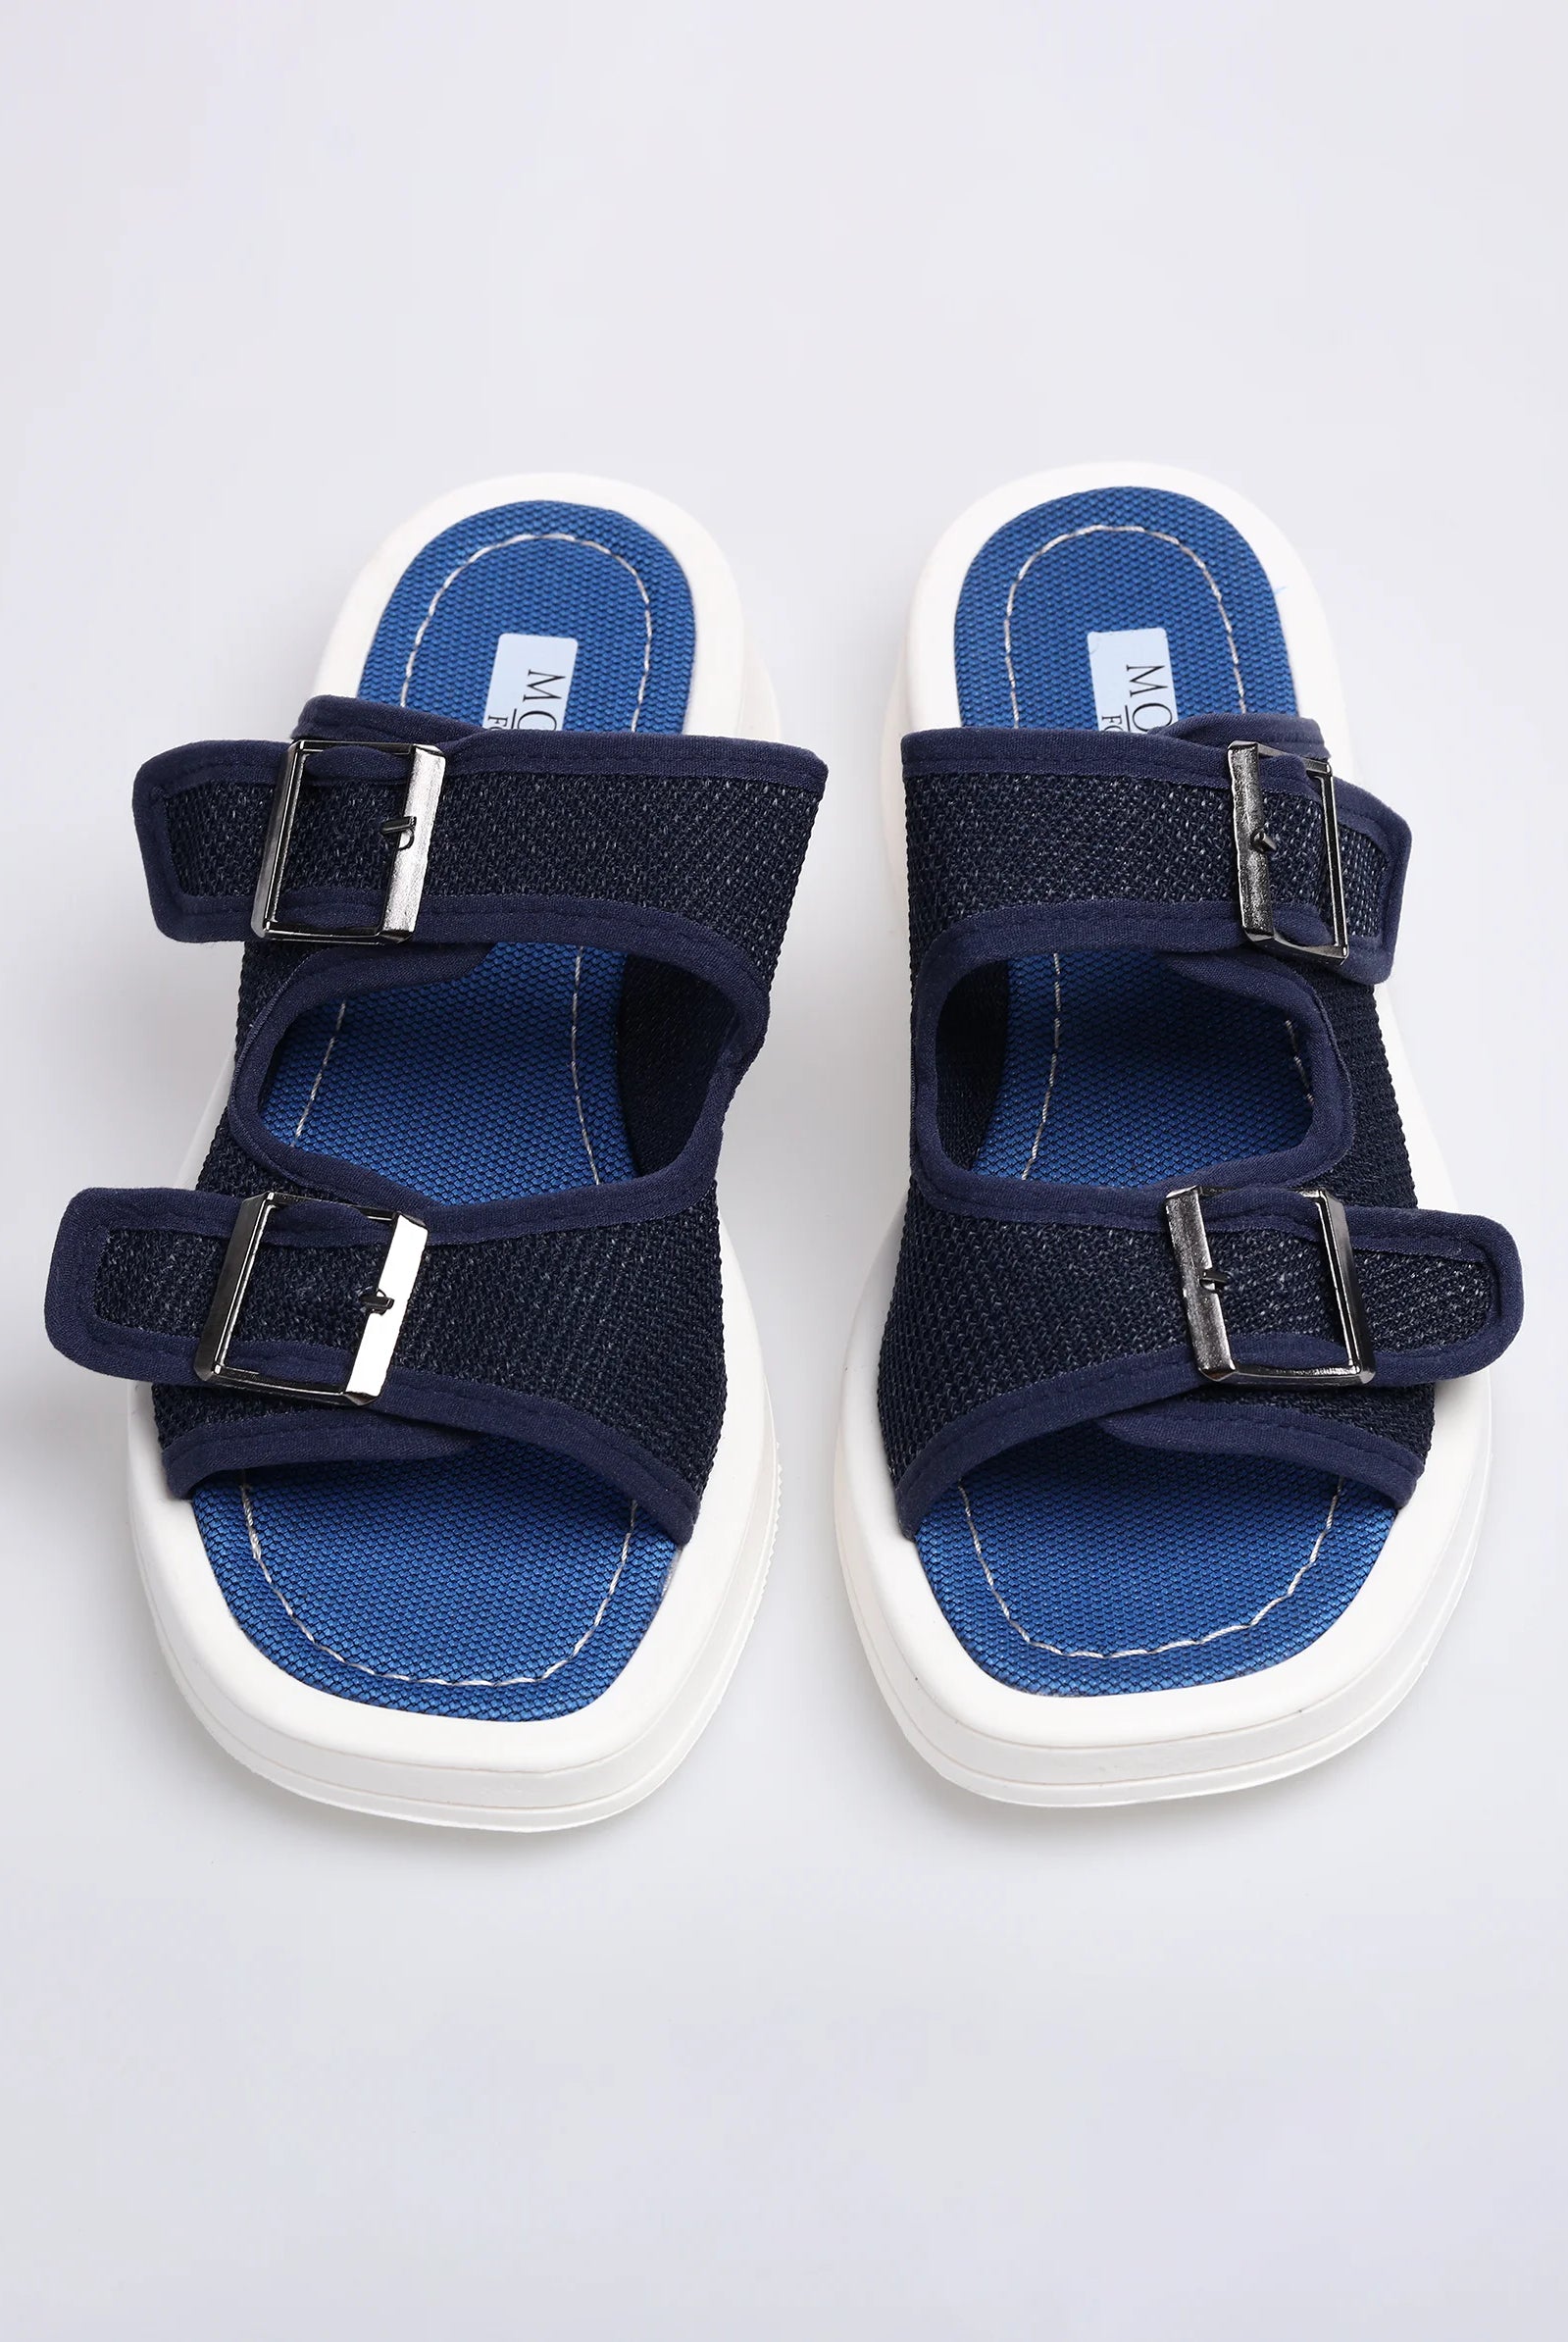 women's navy blue sandals